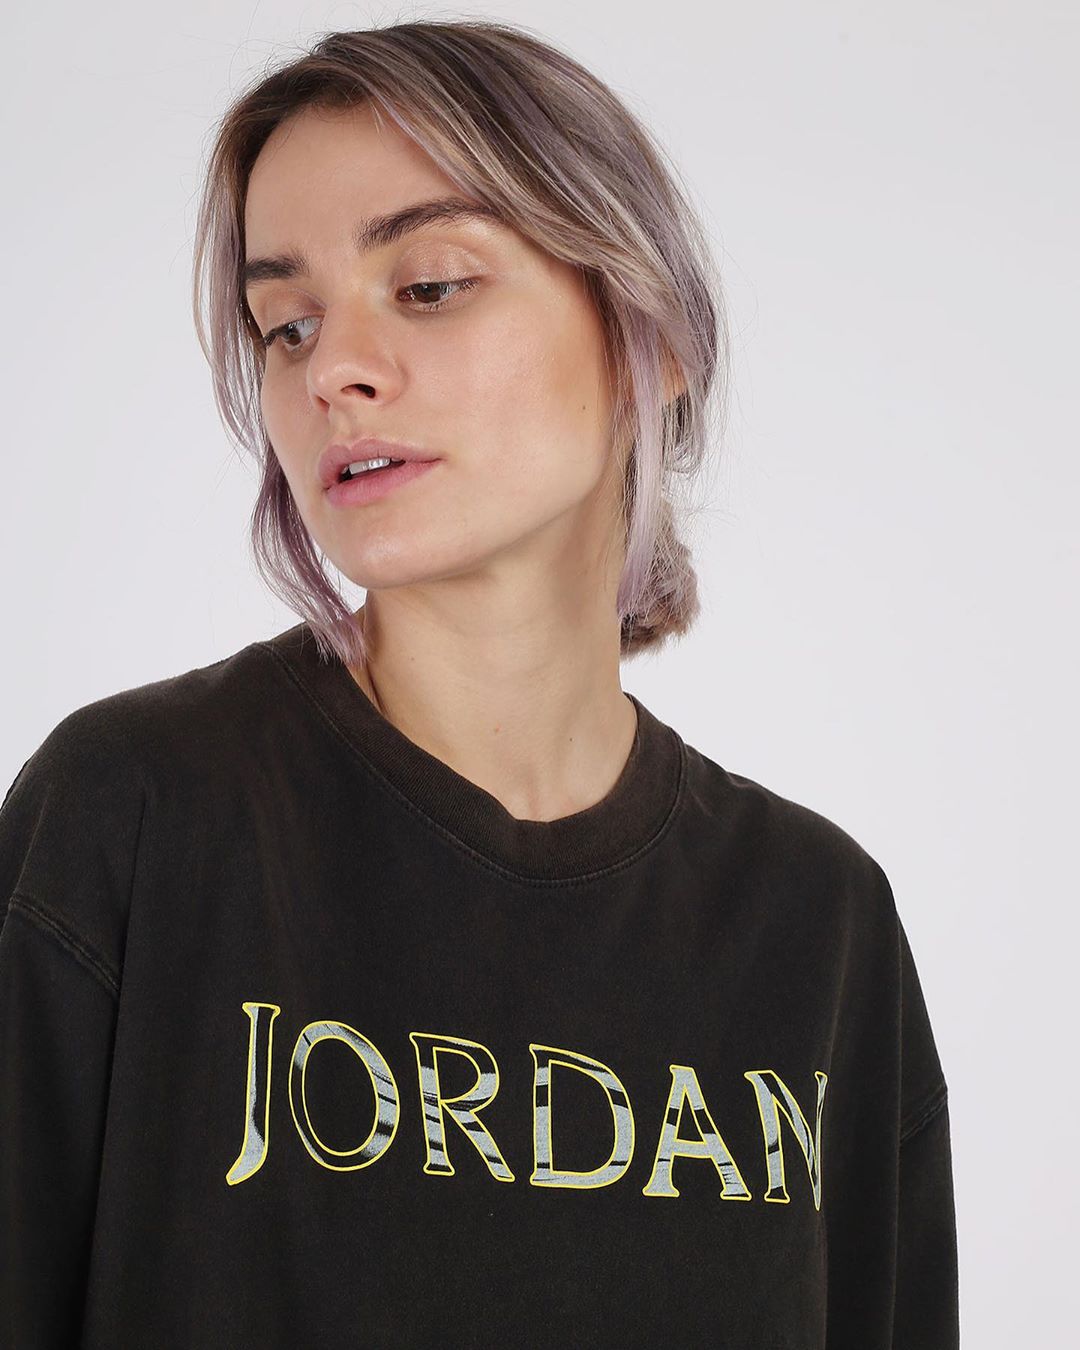 Магазин Sneakerhead - Jordan Brand продолжает баловать девушек красивыми лимитированными коллекциями одежды. Раньше не было отдельной линейки для девушек, но сейчас Jordan Brand заботится о том, чтобы...